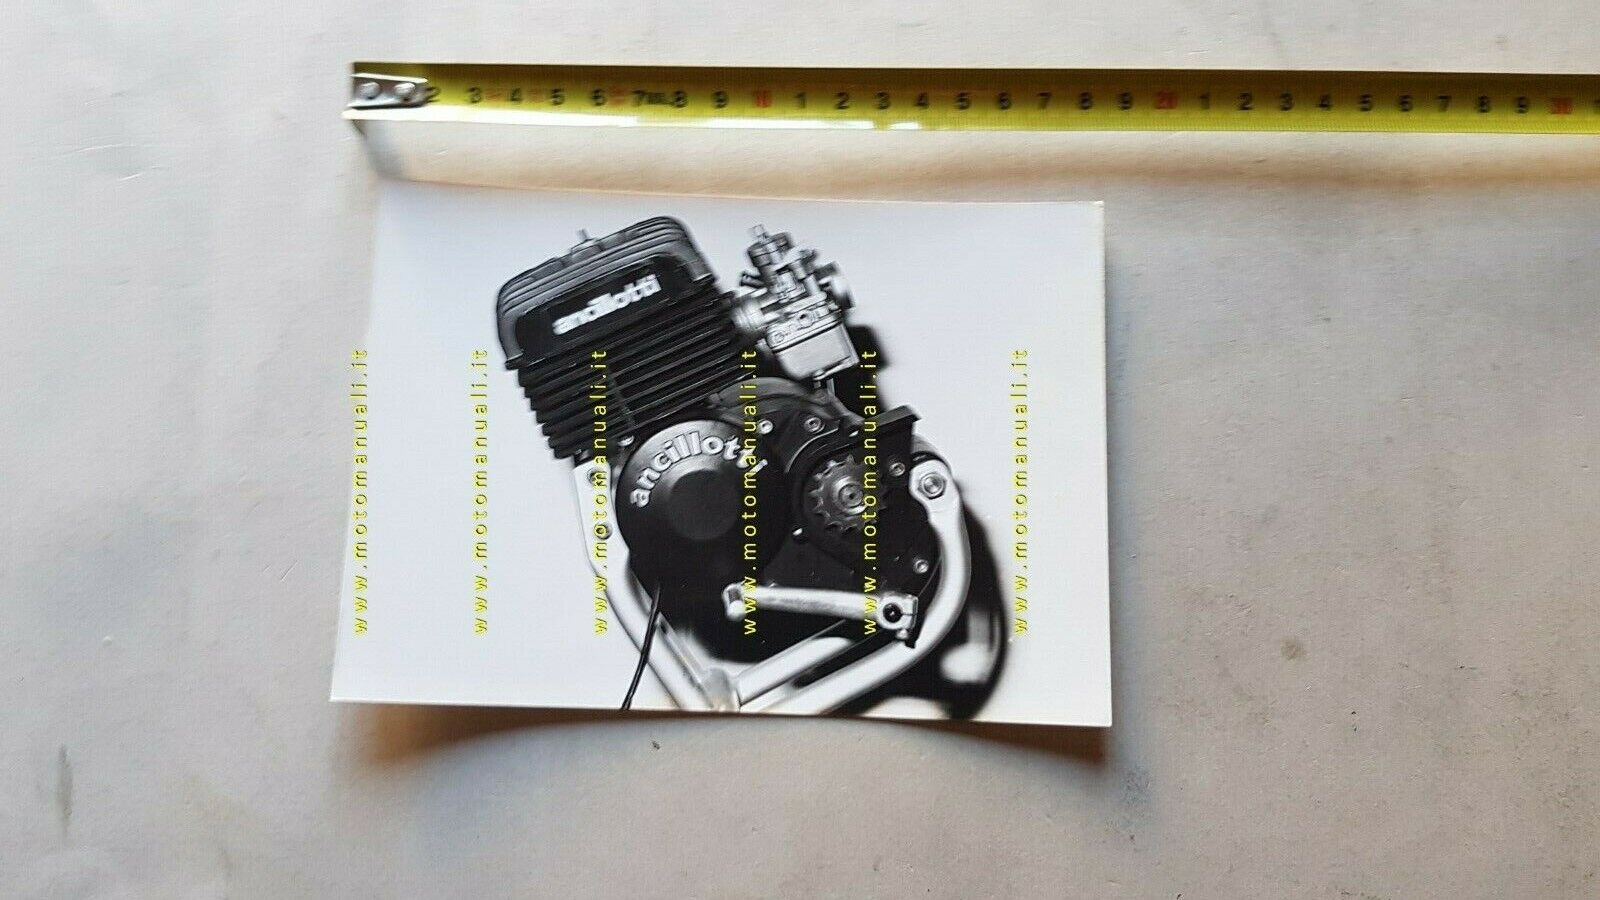 Ancillotti Motore 125 Prototipo 1978 foto cartella stampa moto no depliant 